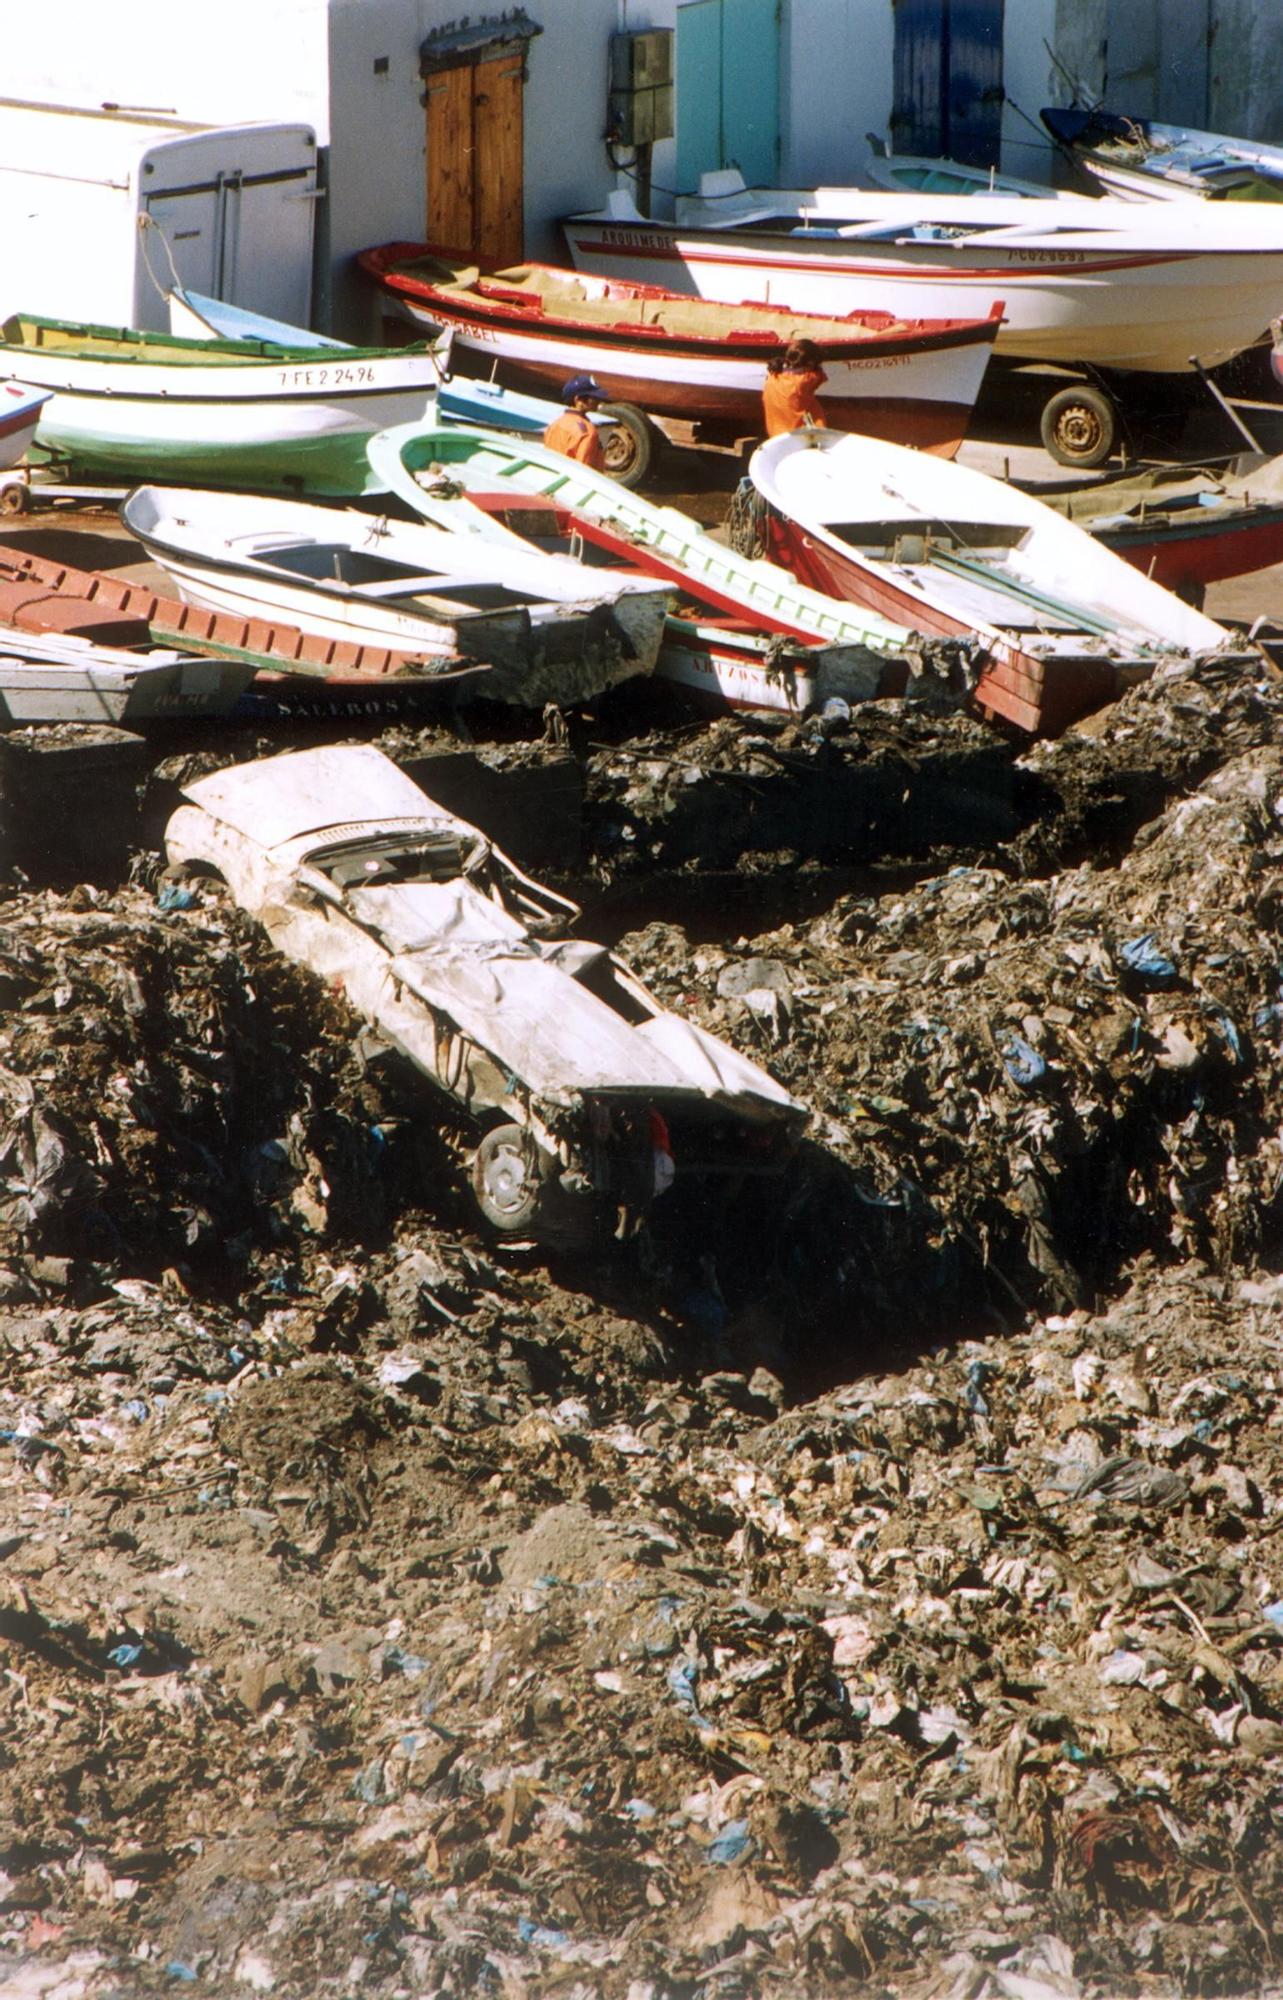 Derrumbe del vertedero de Bens en A Coruña en 1996 Víctor Echave 200.000 toneladas de basura.jpg